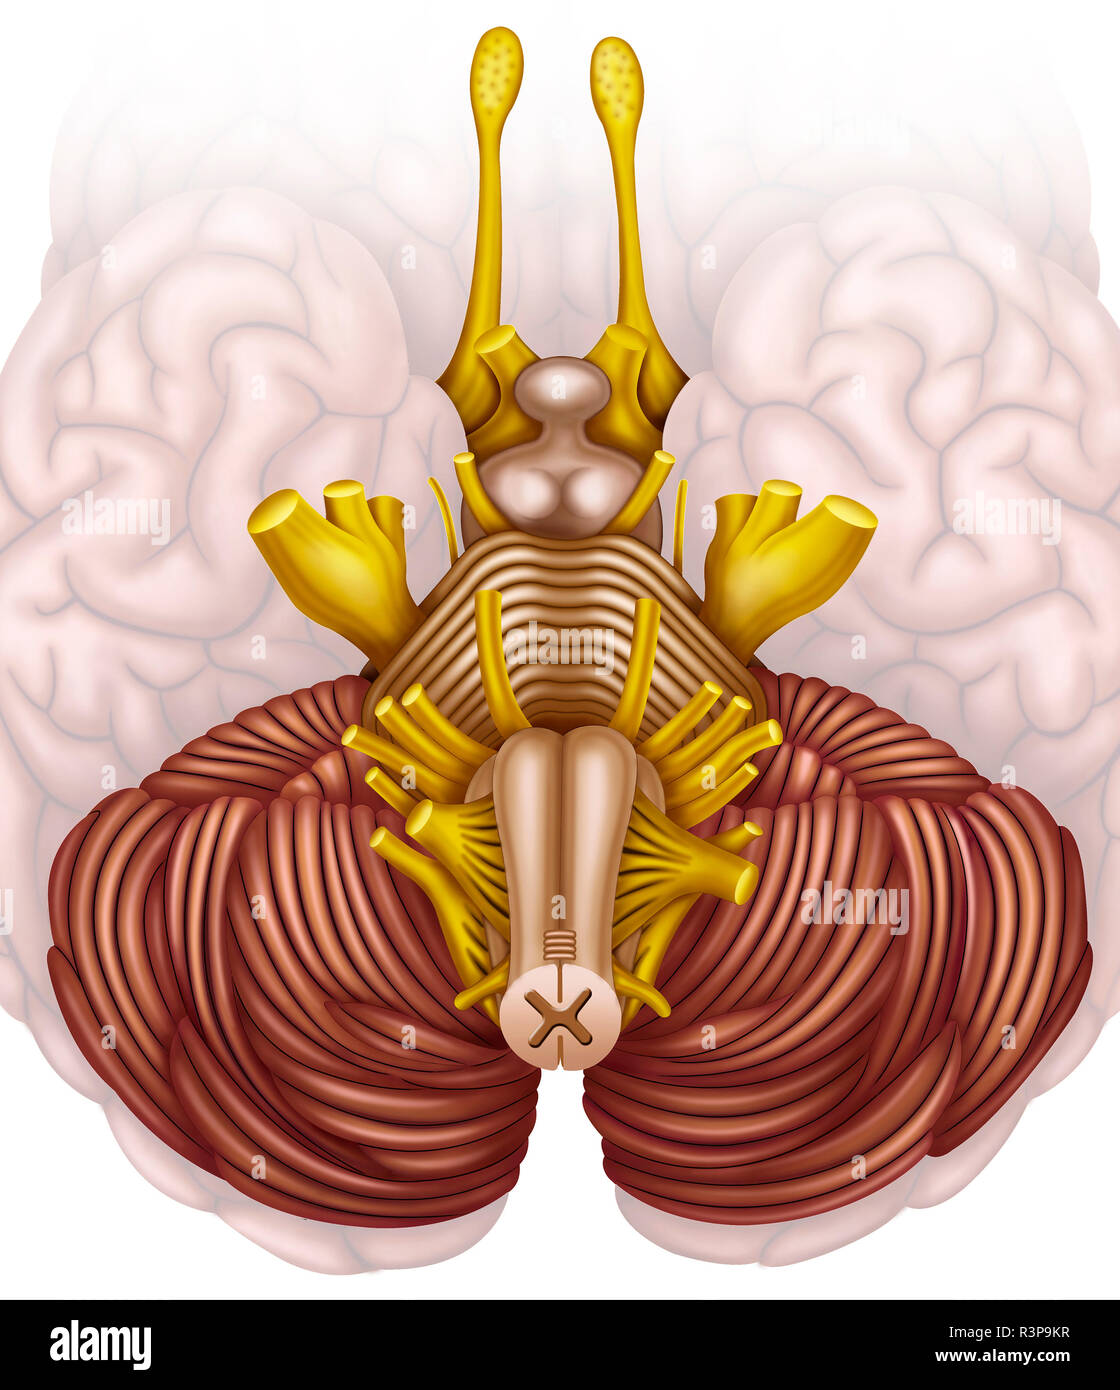 Der Hirnstamm oder der menschliche Hirnstamm ist der Hauptkommunikationspfad für das Gehirn, das Rückenmark und die peripheren Nerven. Stockfoto